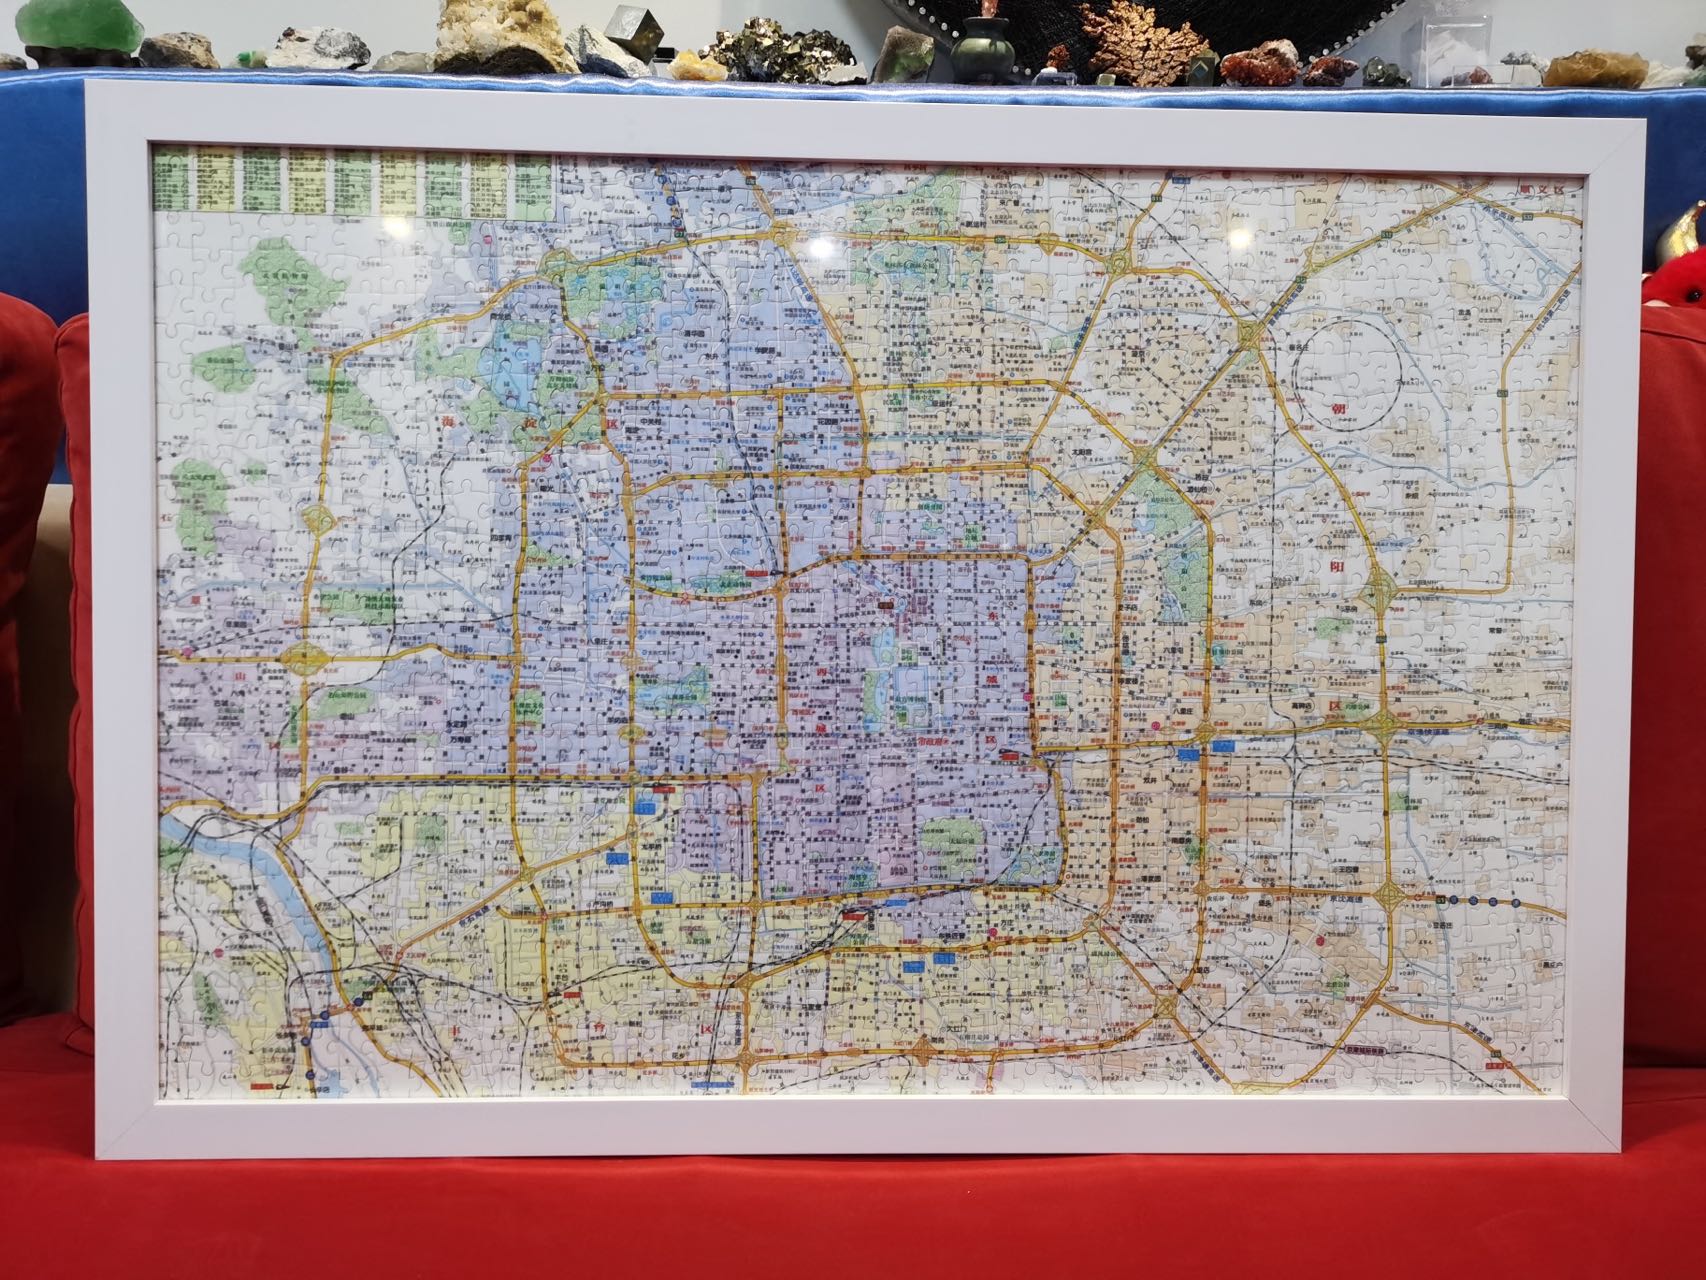 为了熟悉北京城，我定做了一个北京地图拼图，还买了一本北京地图册，其中海淀山后地区都快被我翻烂了。